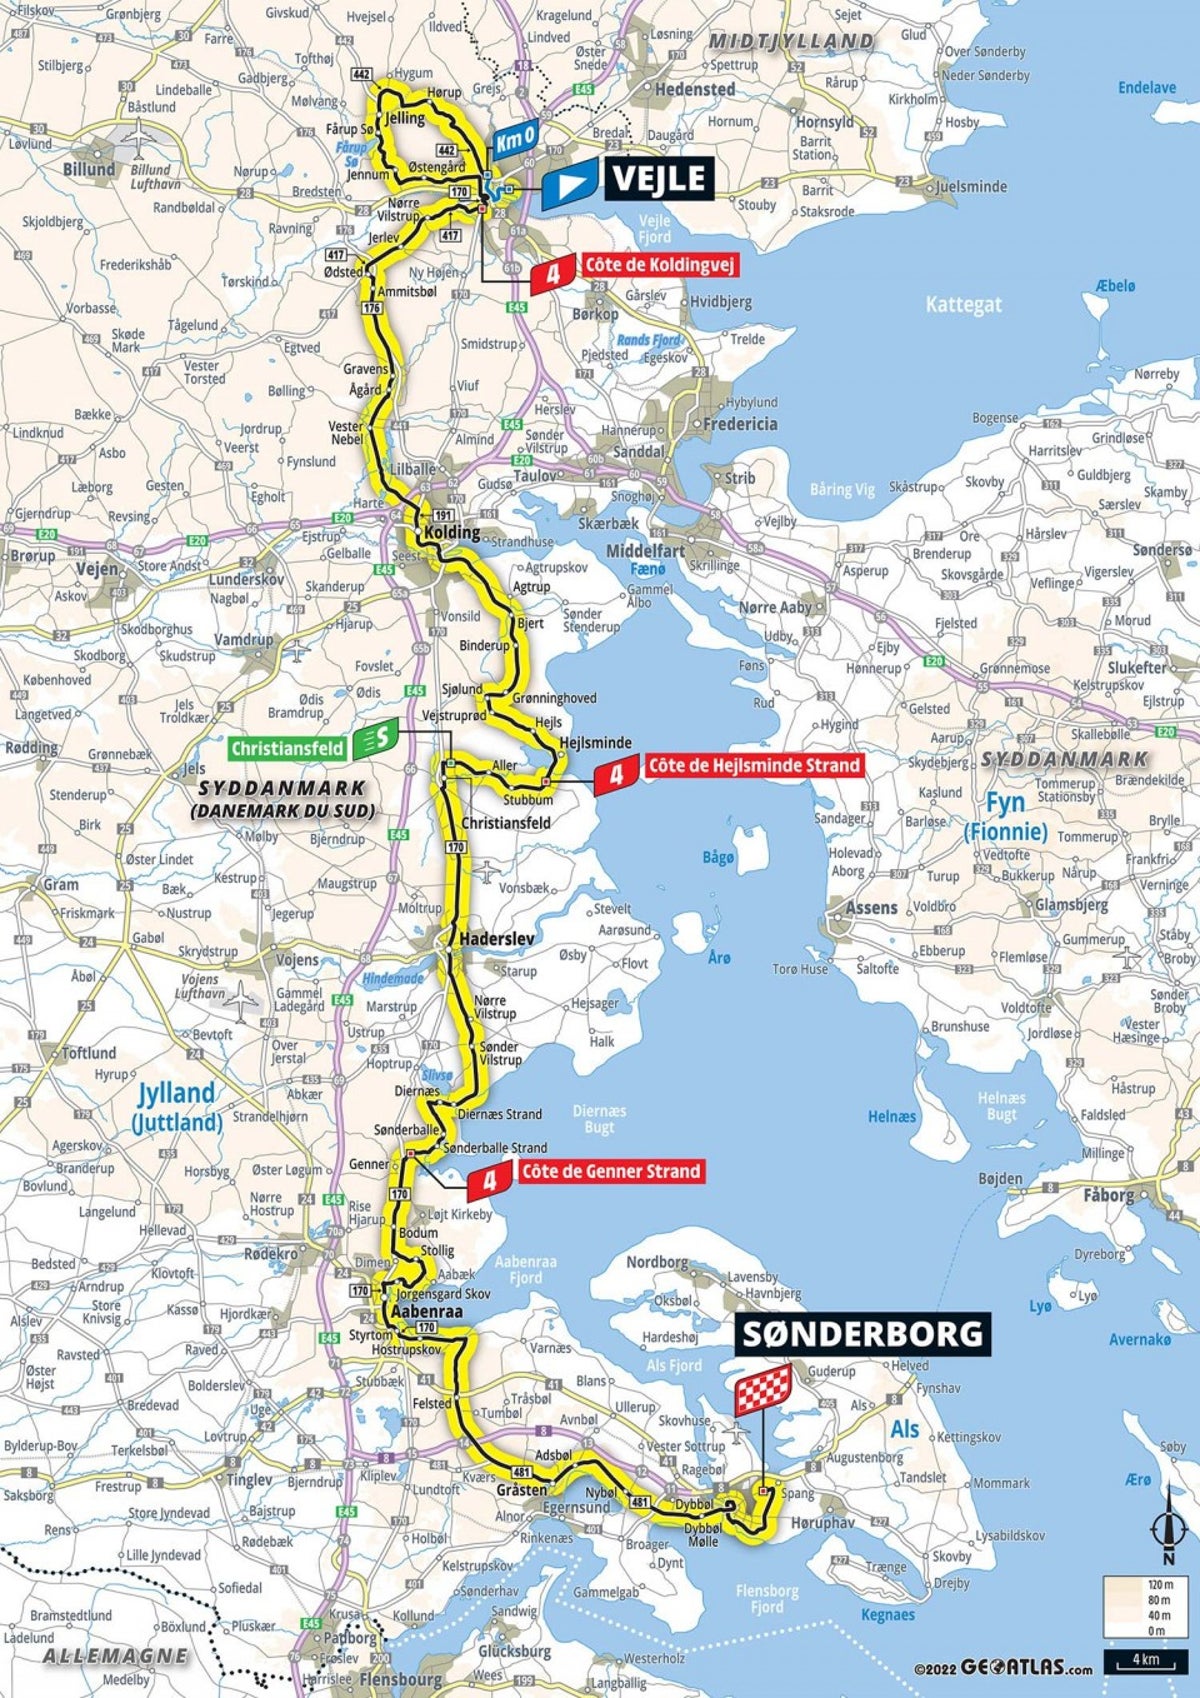 Prévia da etapa 3 do Tour de France 2022 mapa e perfil da rota